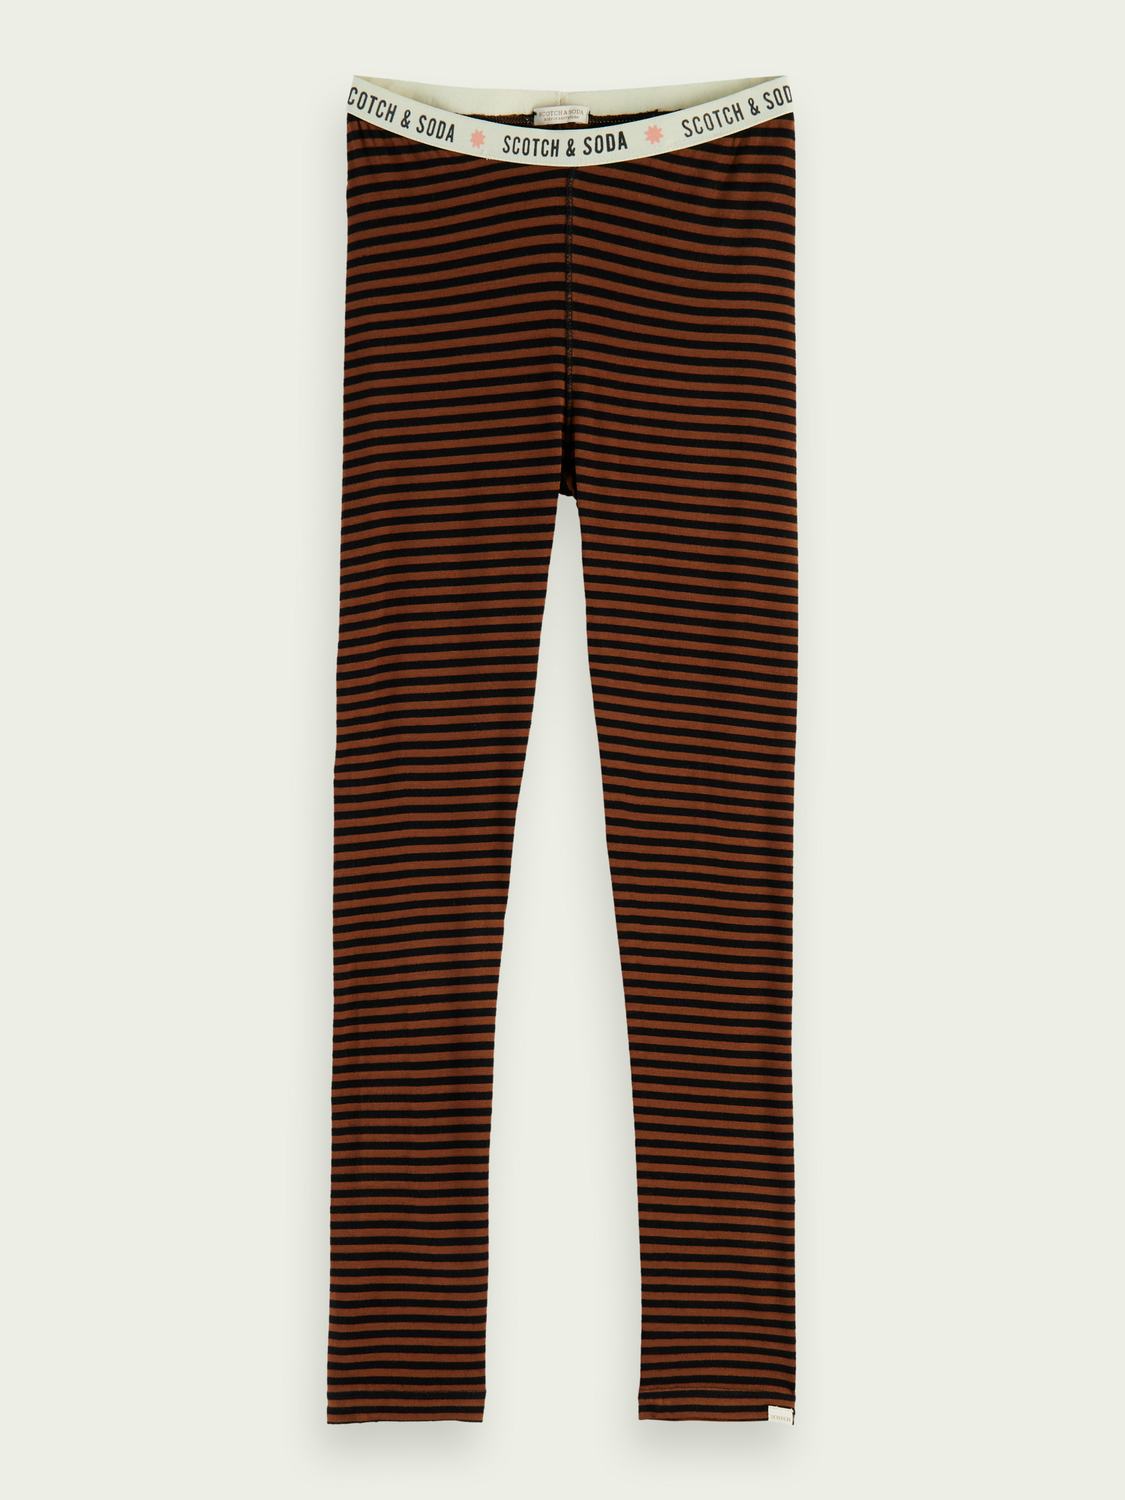 Yarn diyed stripes leggings, Scotch & Soda